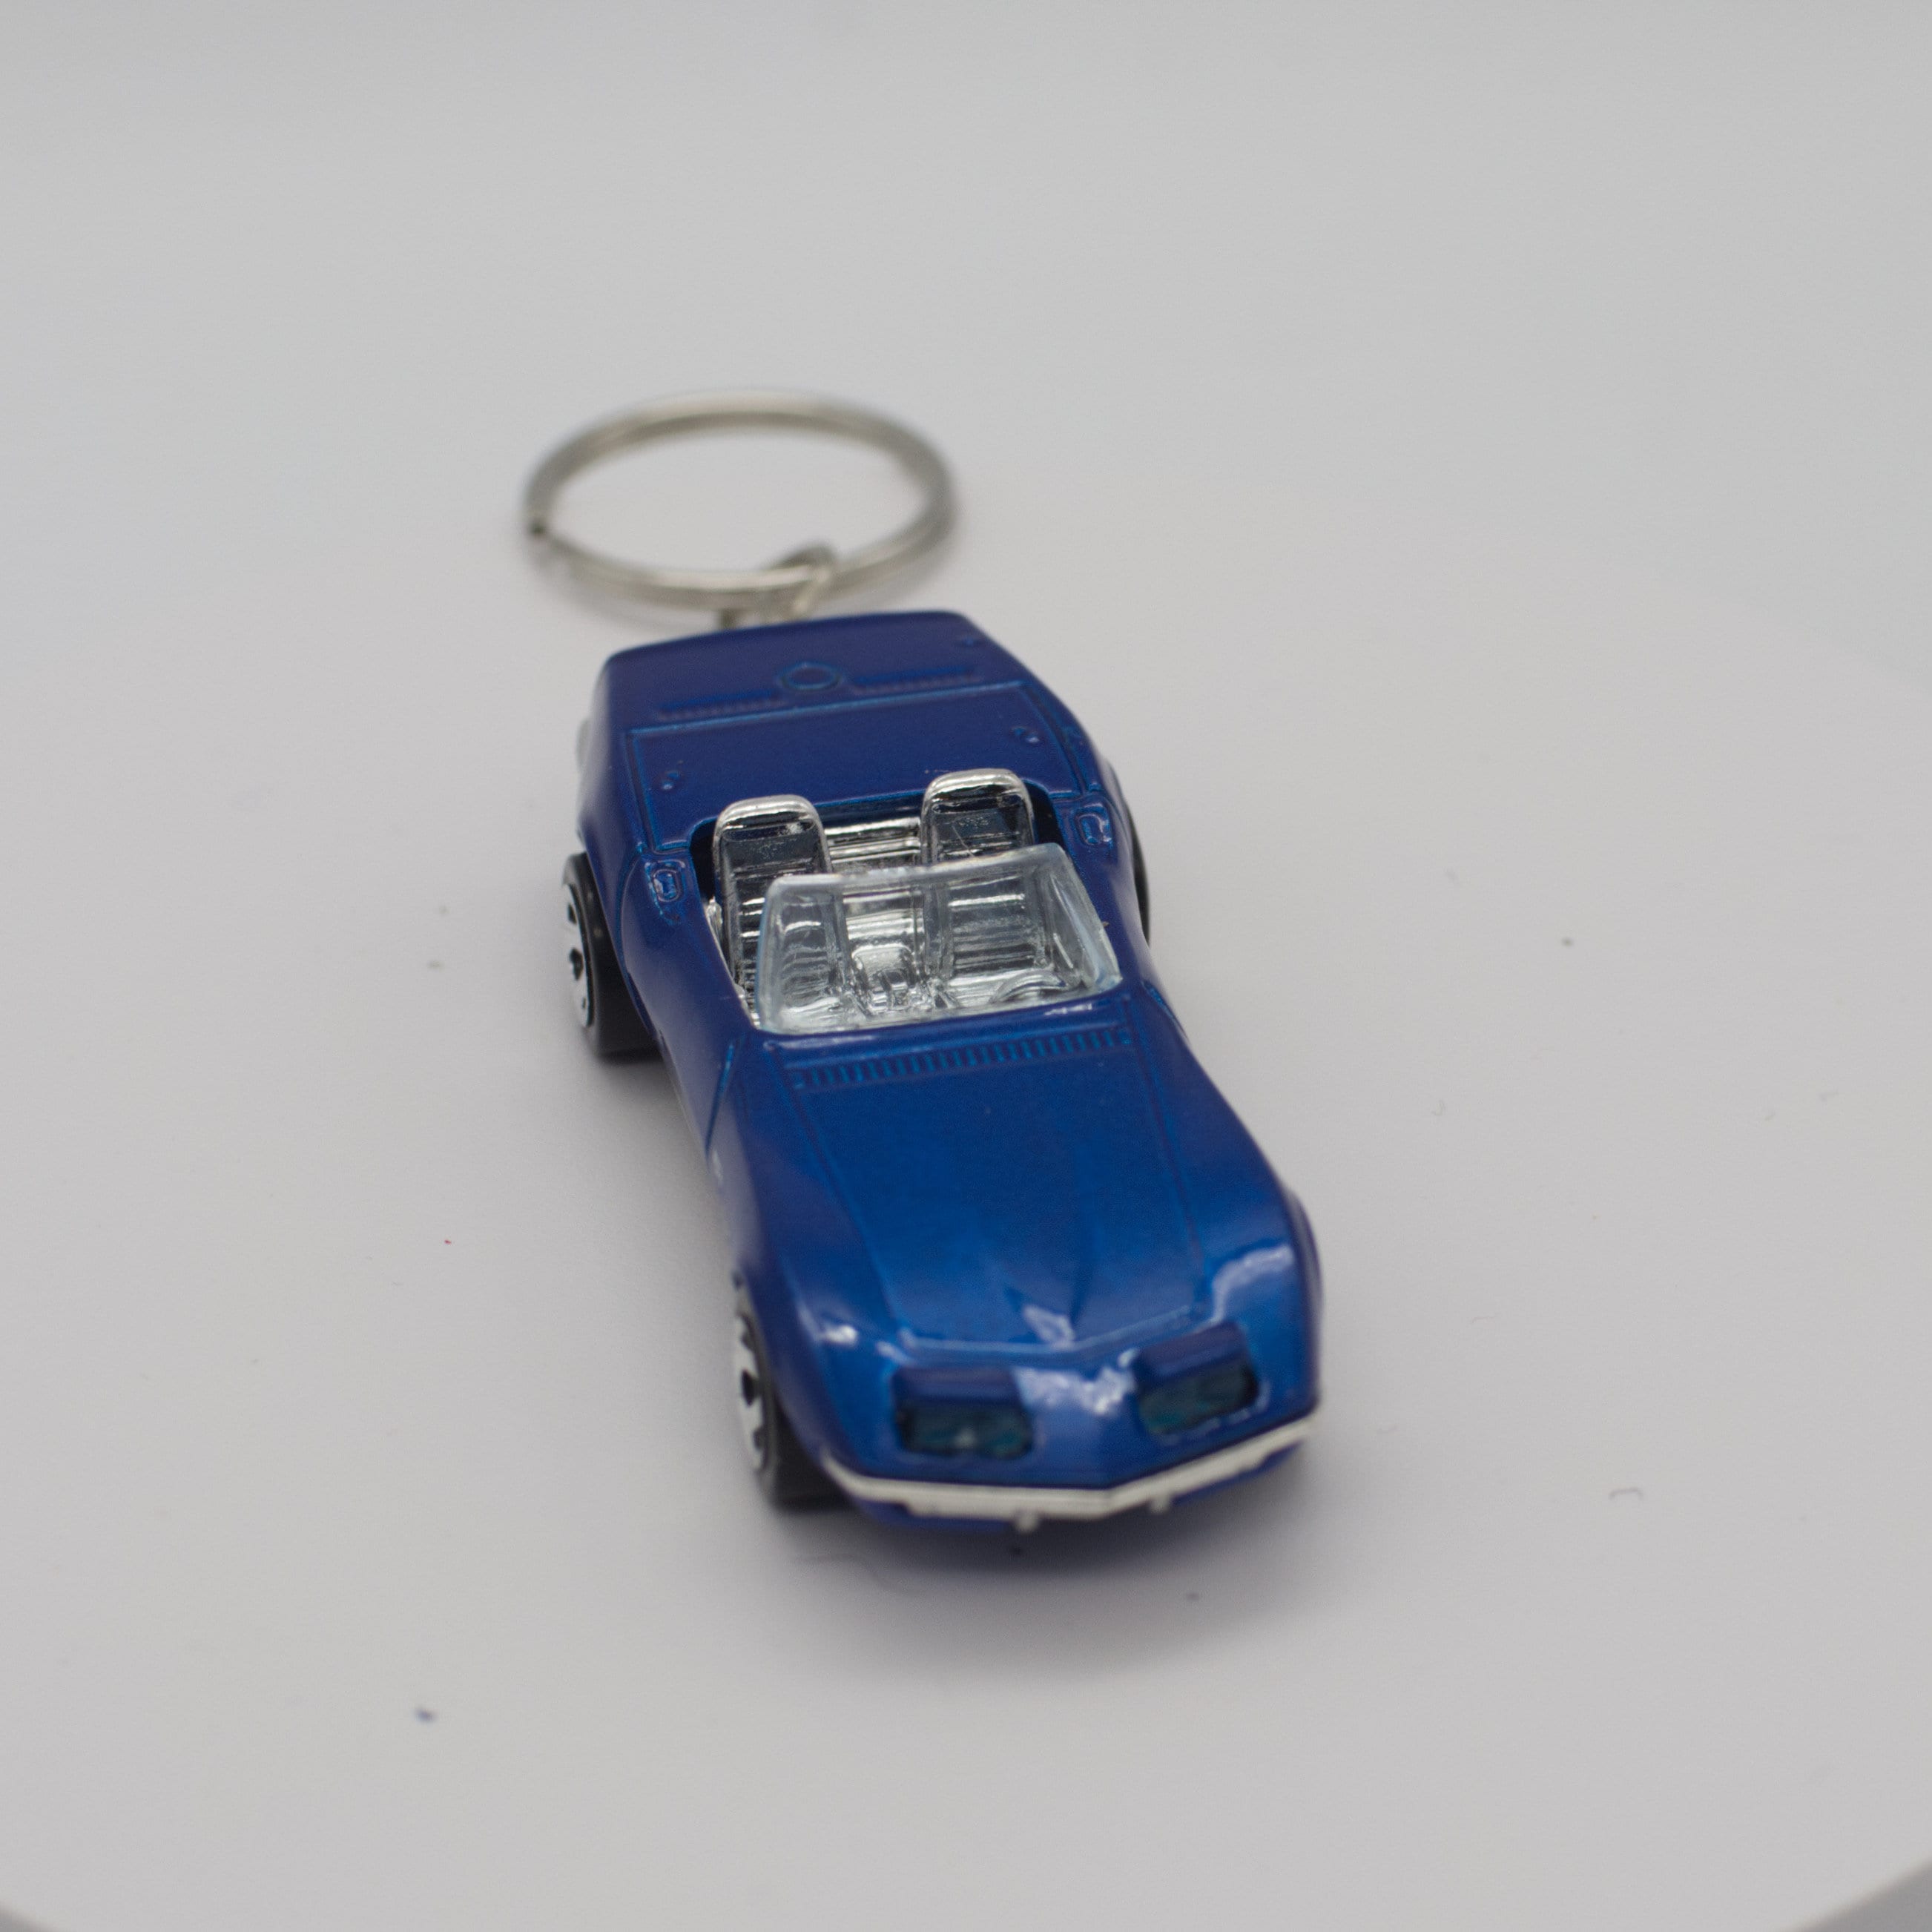 Porte clé Citroën C3 Aircross noire ,en métal, idée cadeau sympa